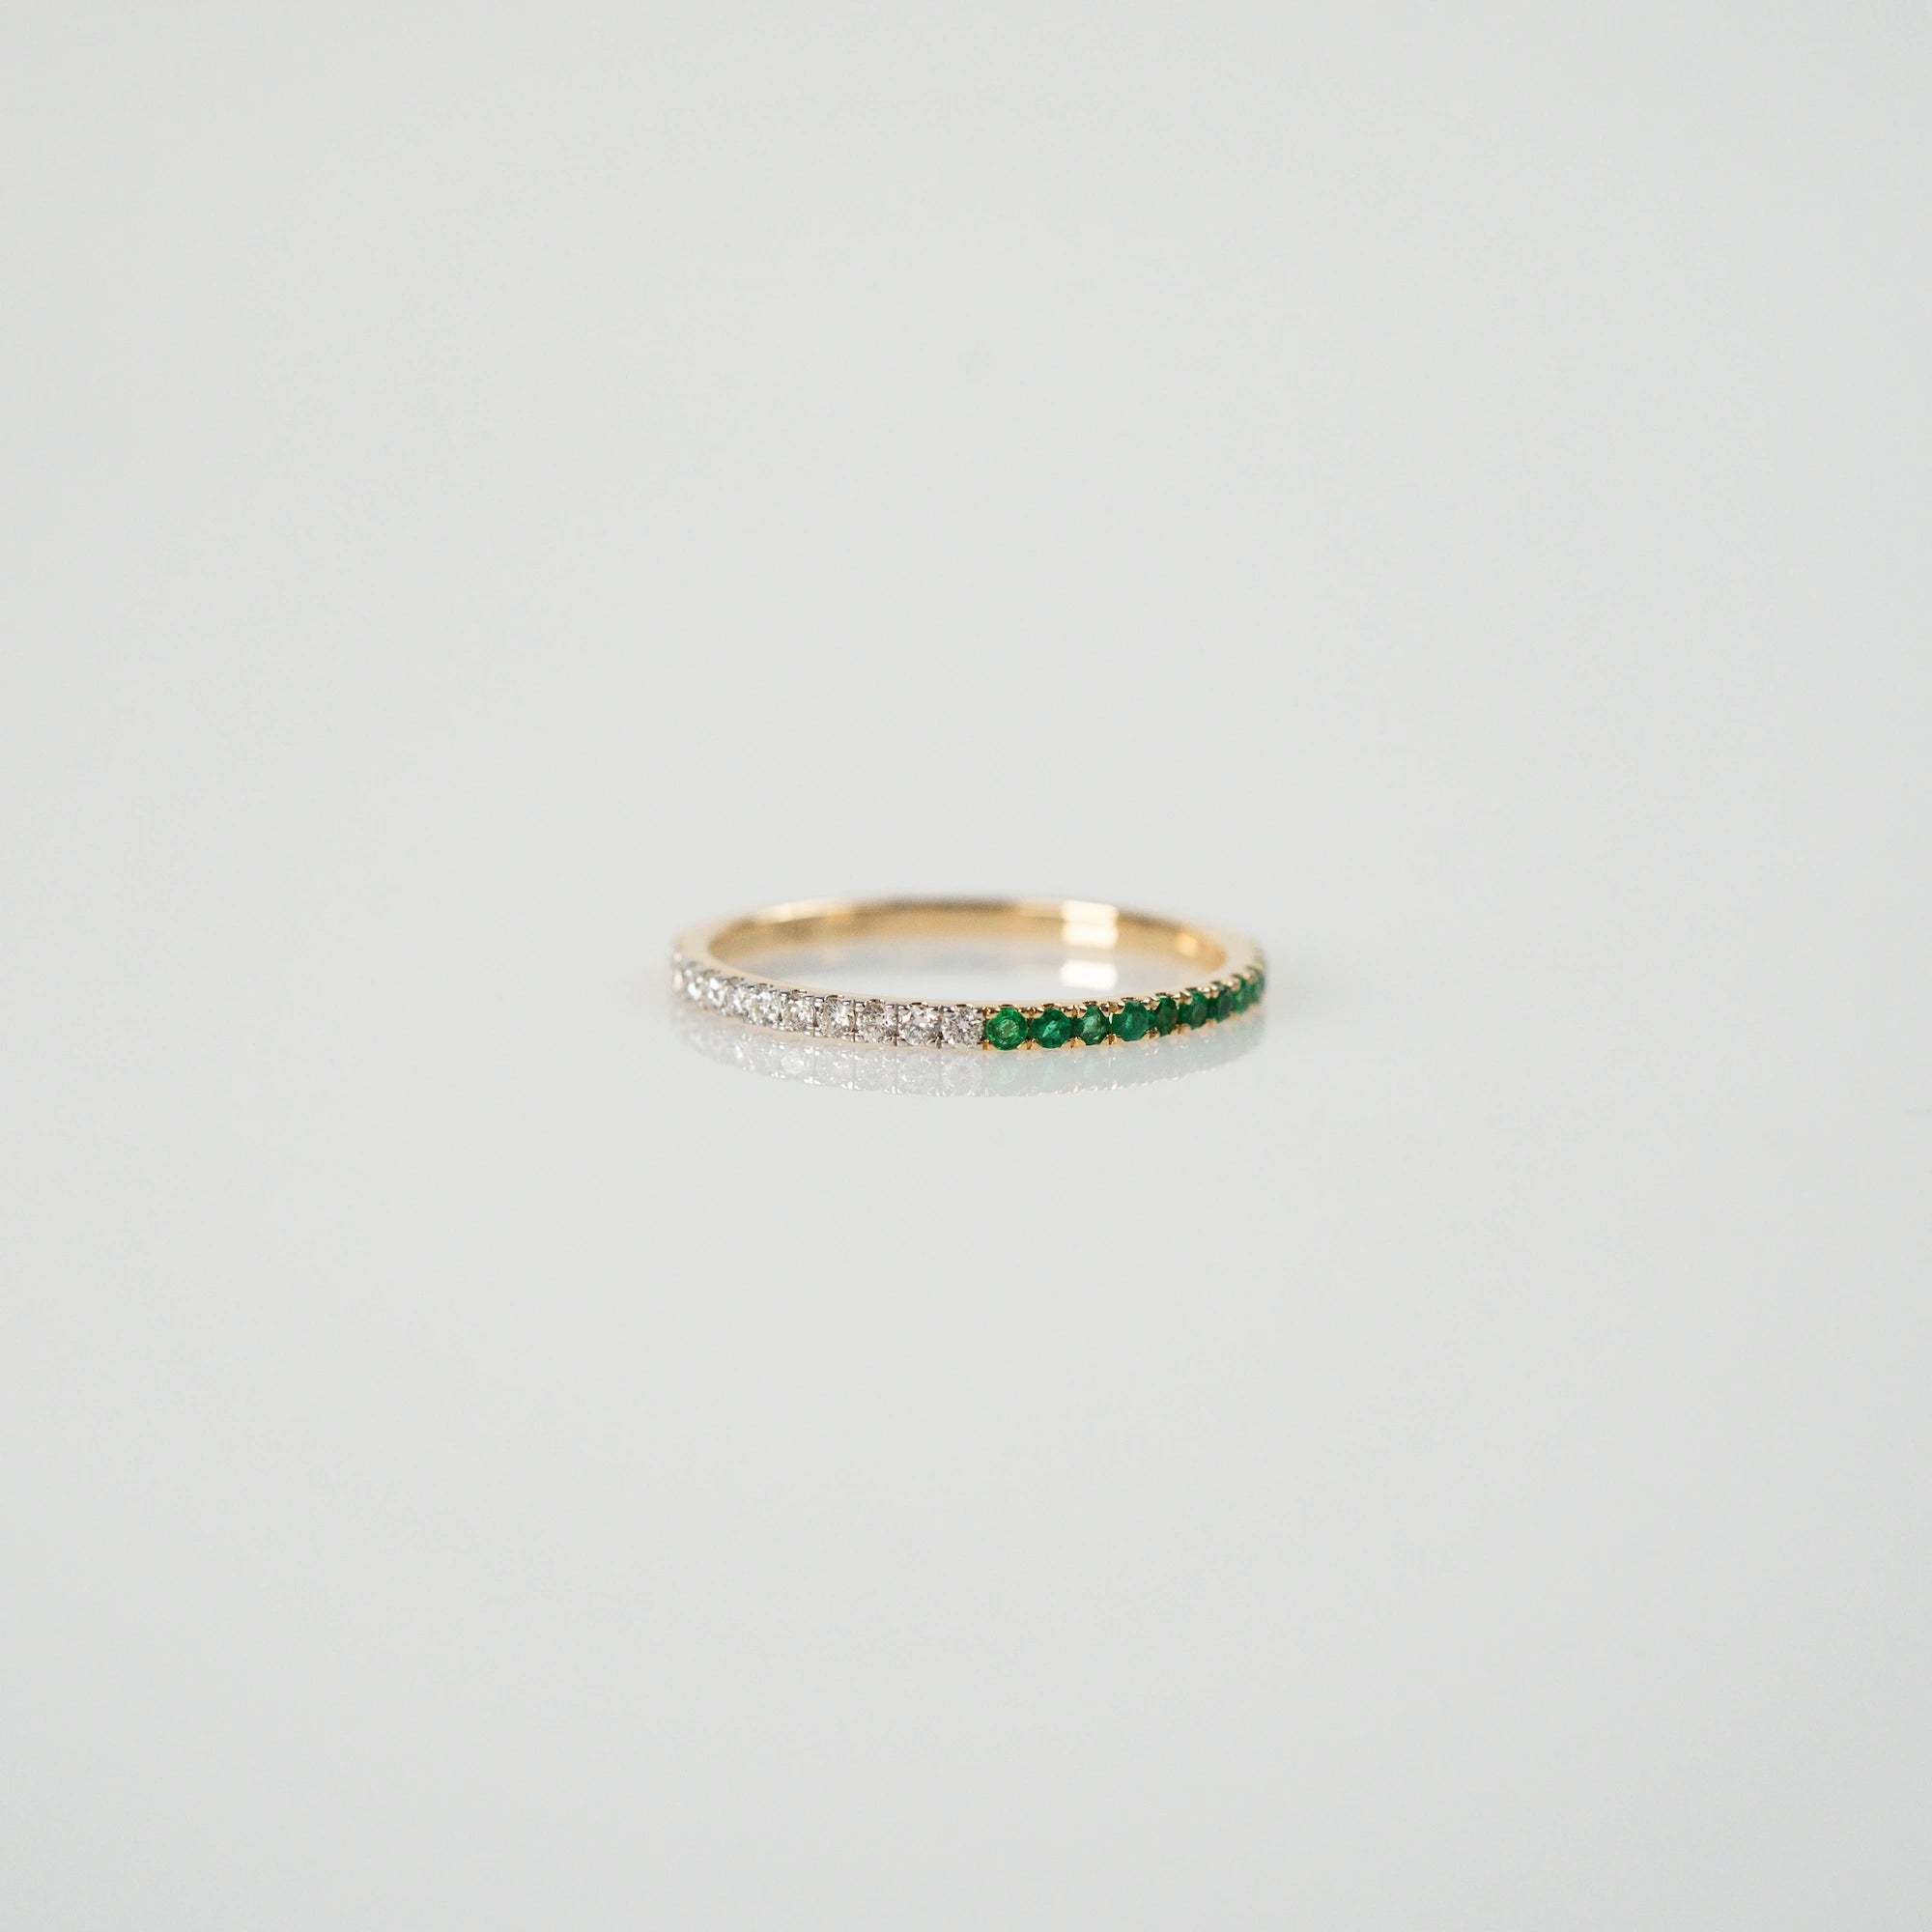 Produktfoto des liegenden Memoire Rings aus der Schmuckatelier Lang Collection, der halb mit Smaragden und halb mit Diamanten besetzt ist